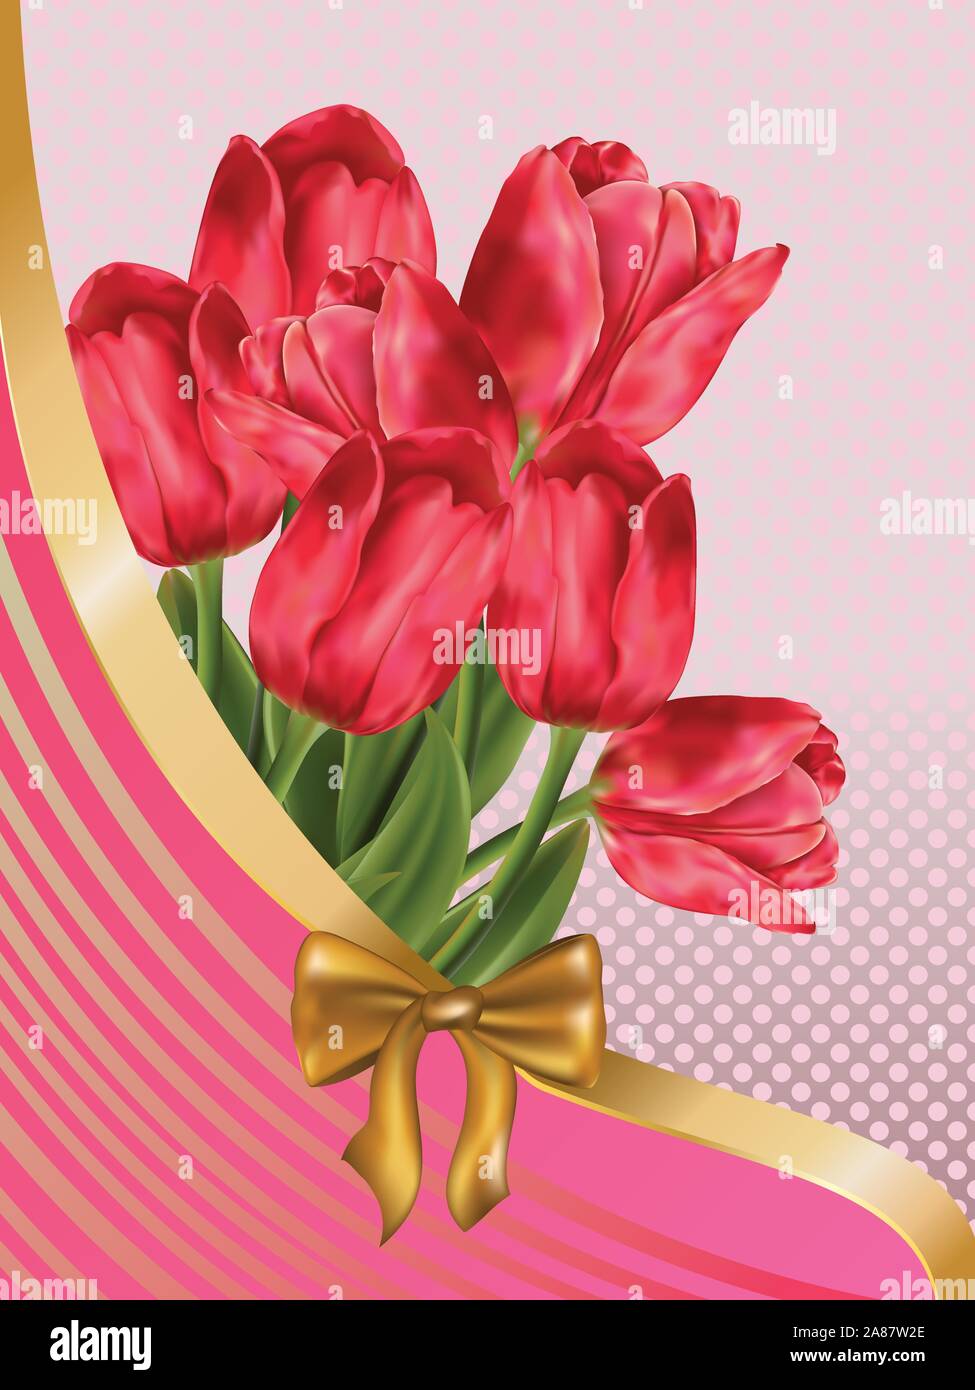 Scheda con tulipani rosa e nastro dorato, prua. Illustrazione Vettoriale